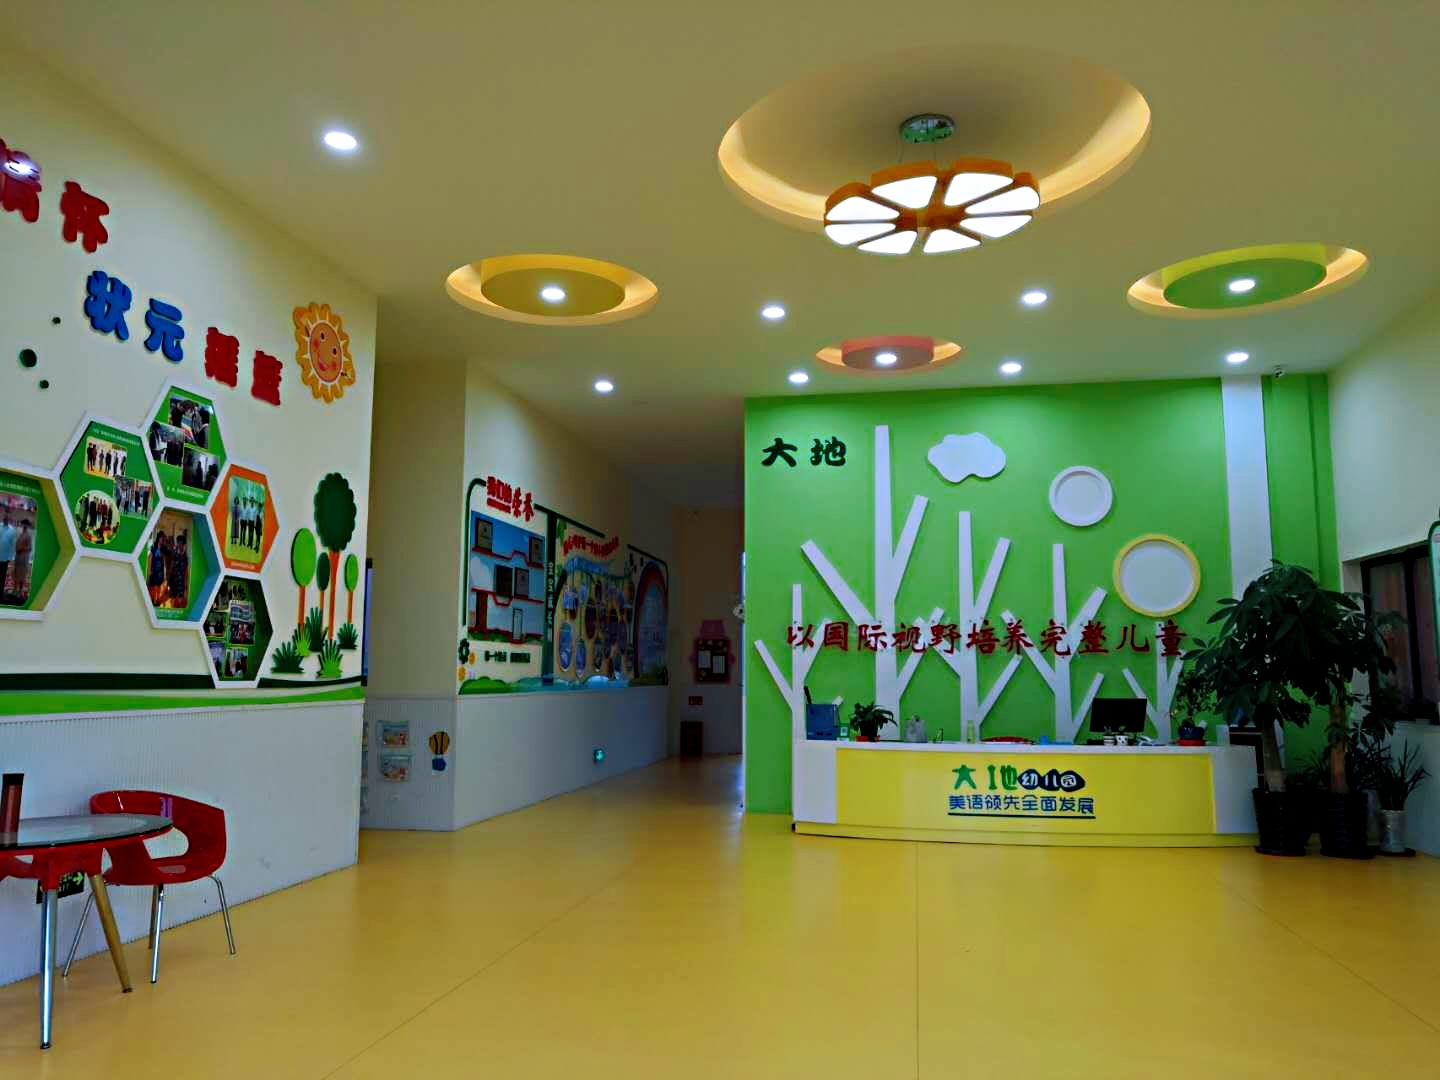 【大地幼儿园】-幼儿园室内设计 | 幼儿设计公司-CND设计网,中国设计网络首选品牌